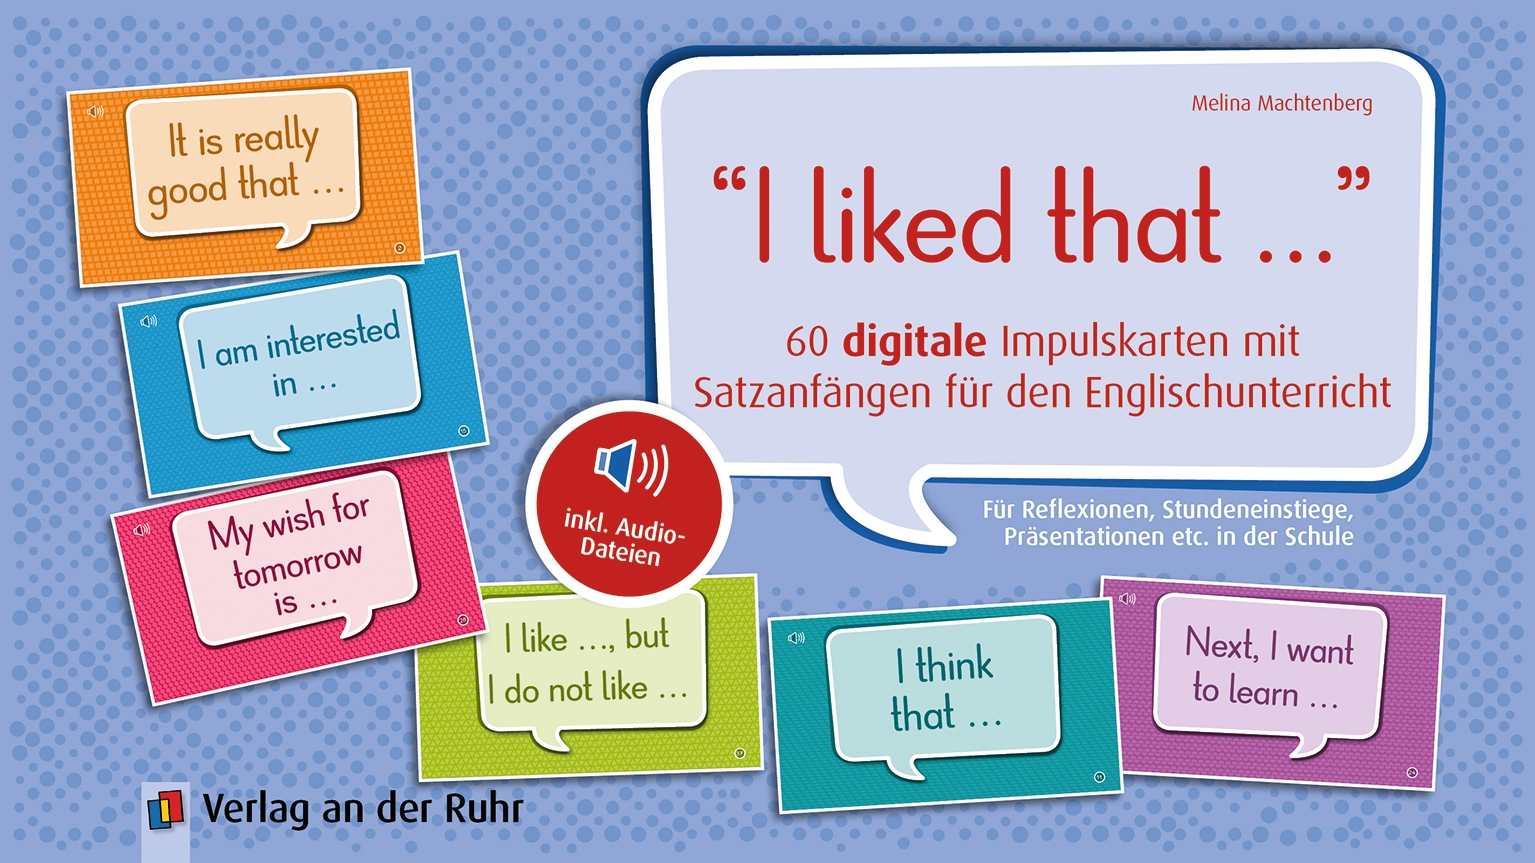 "I liked that …“ 60 digitale Impulskarten mit Satzanfängen für den Englischunterricht, inkl. Audio-Dateien – Premium-Lizenz – Online